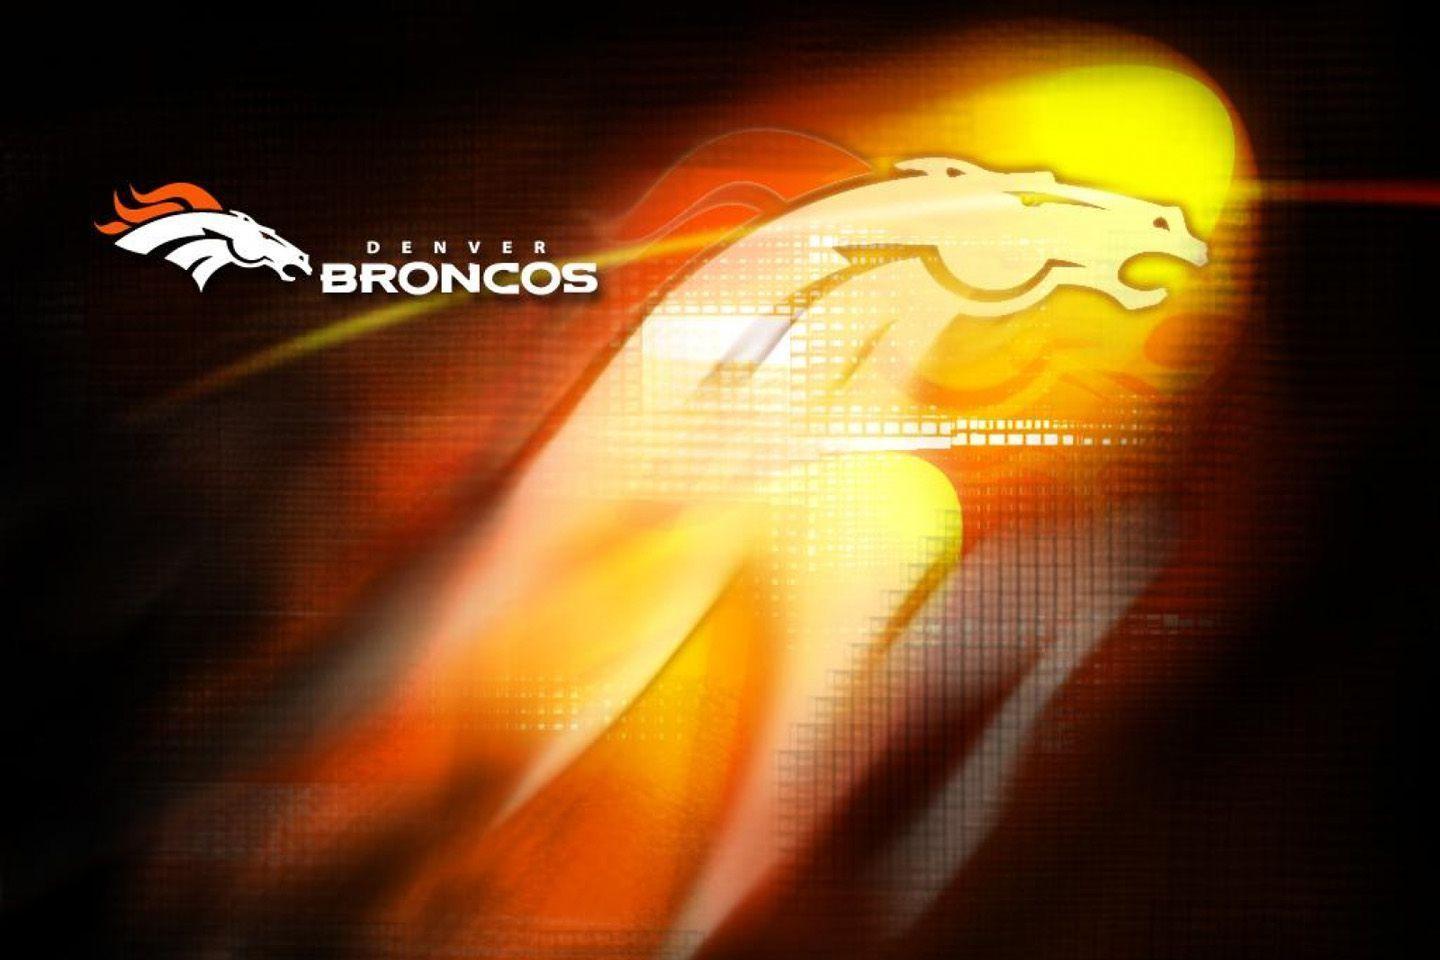 Free Denver Broncos wallpaper desktop image. Denver Broncos